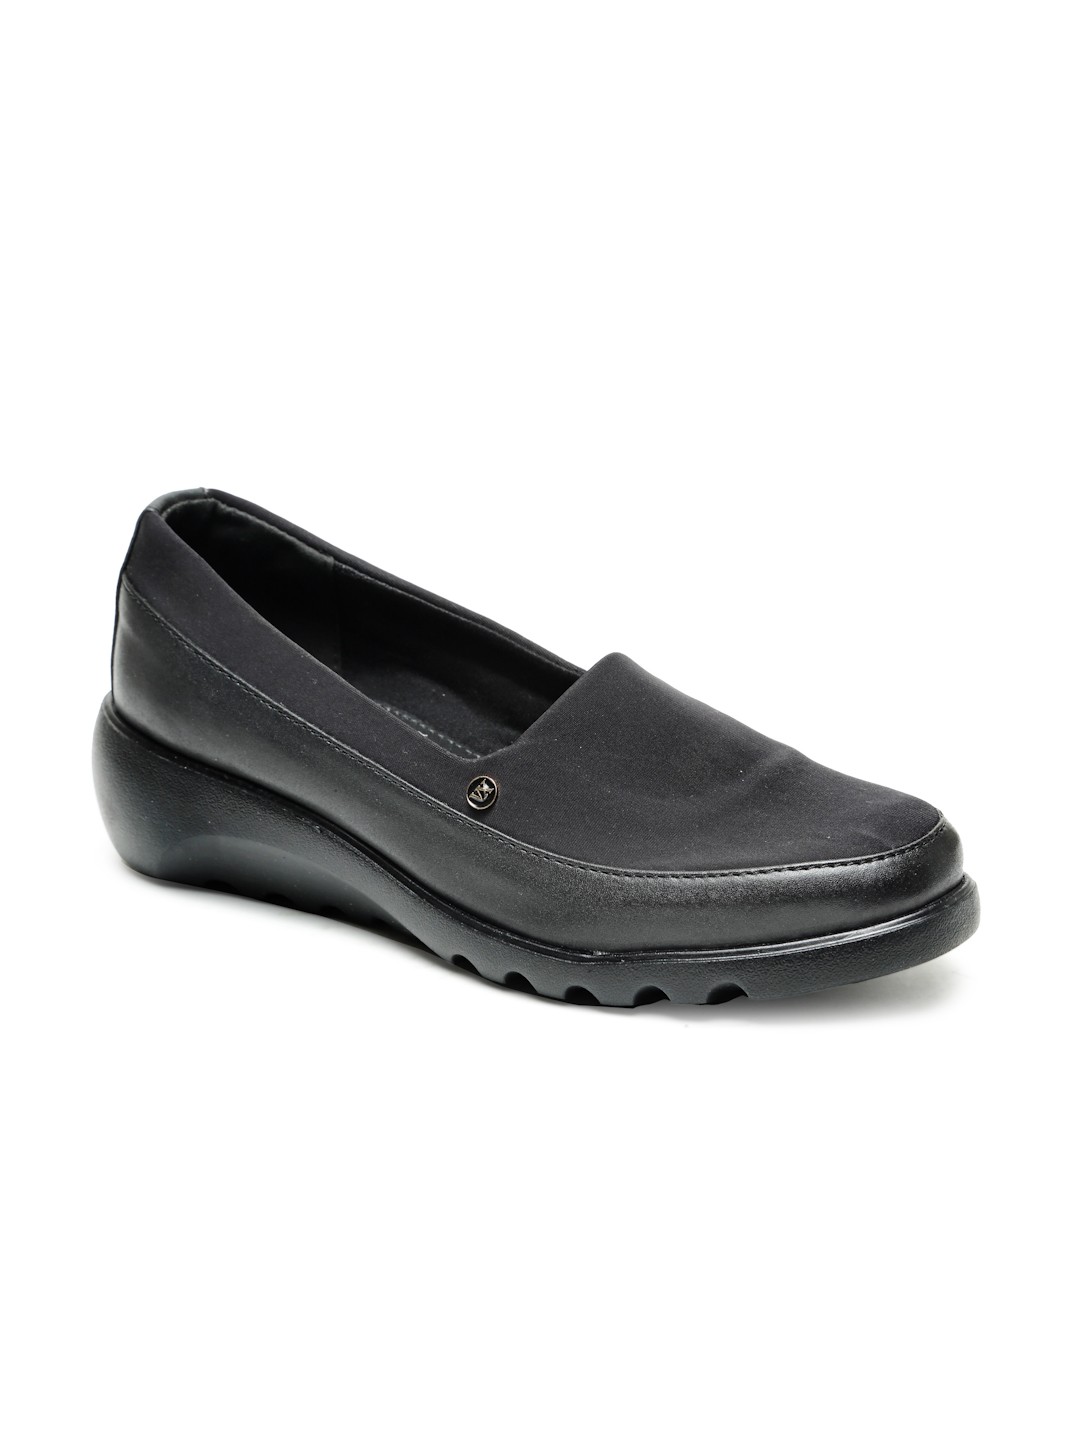 Buy Von Wellx Germany Comfort Women's Black Casual Shoes Elsa Online in Agra